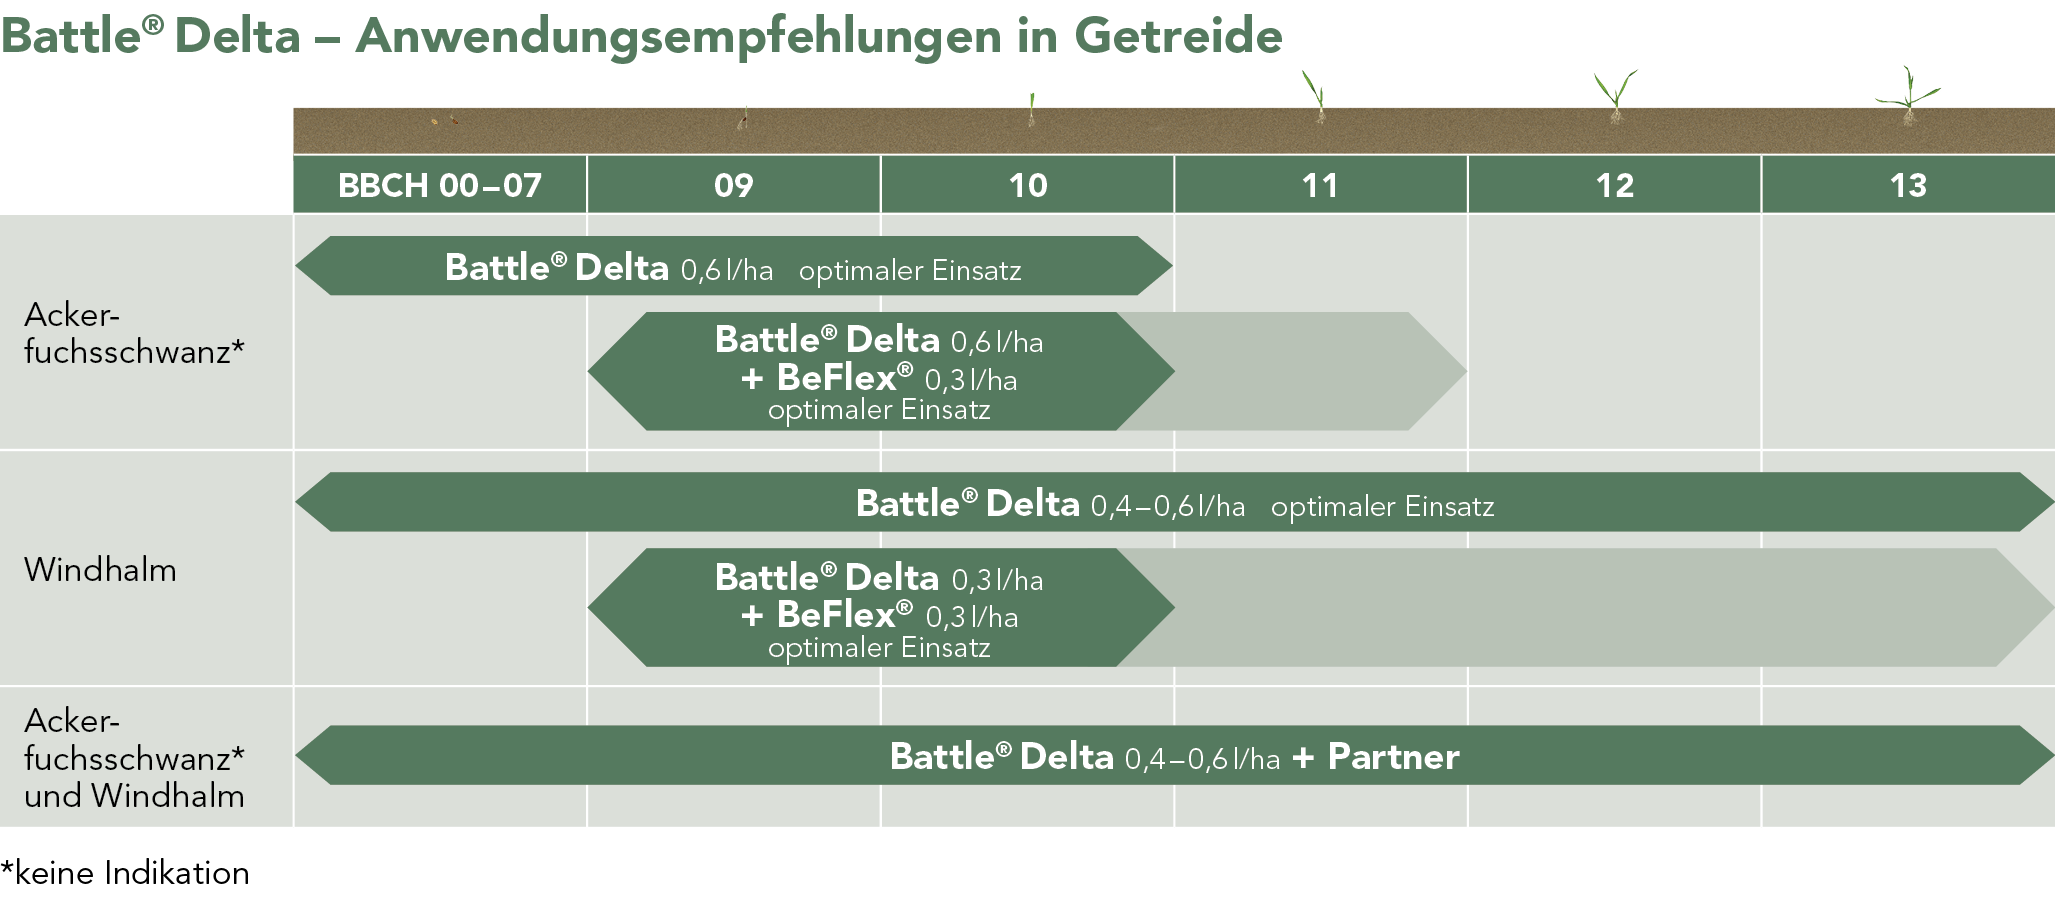 Battle® Delta – Anwendungsempfehlungen in Getreide